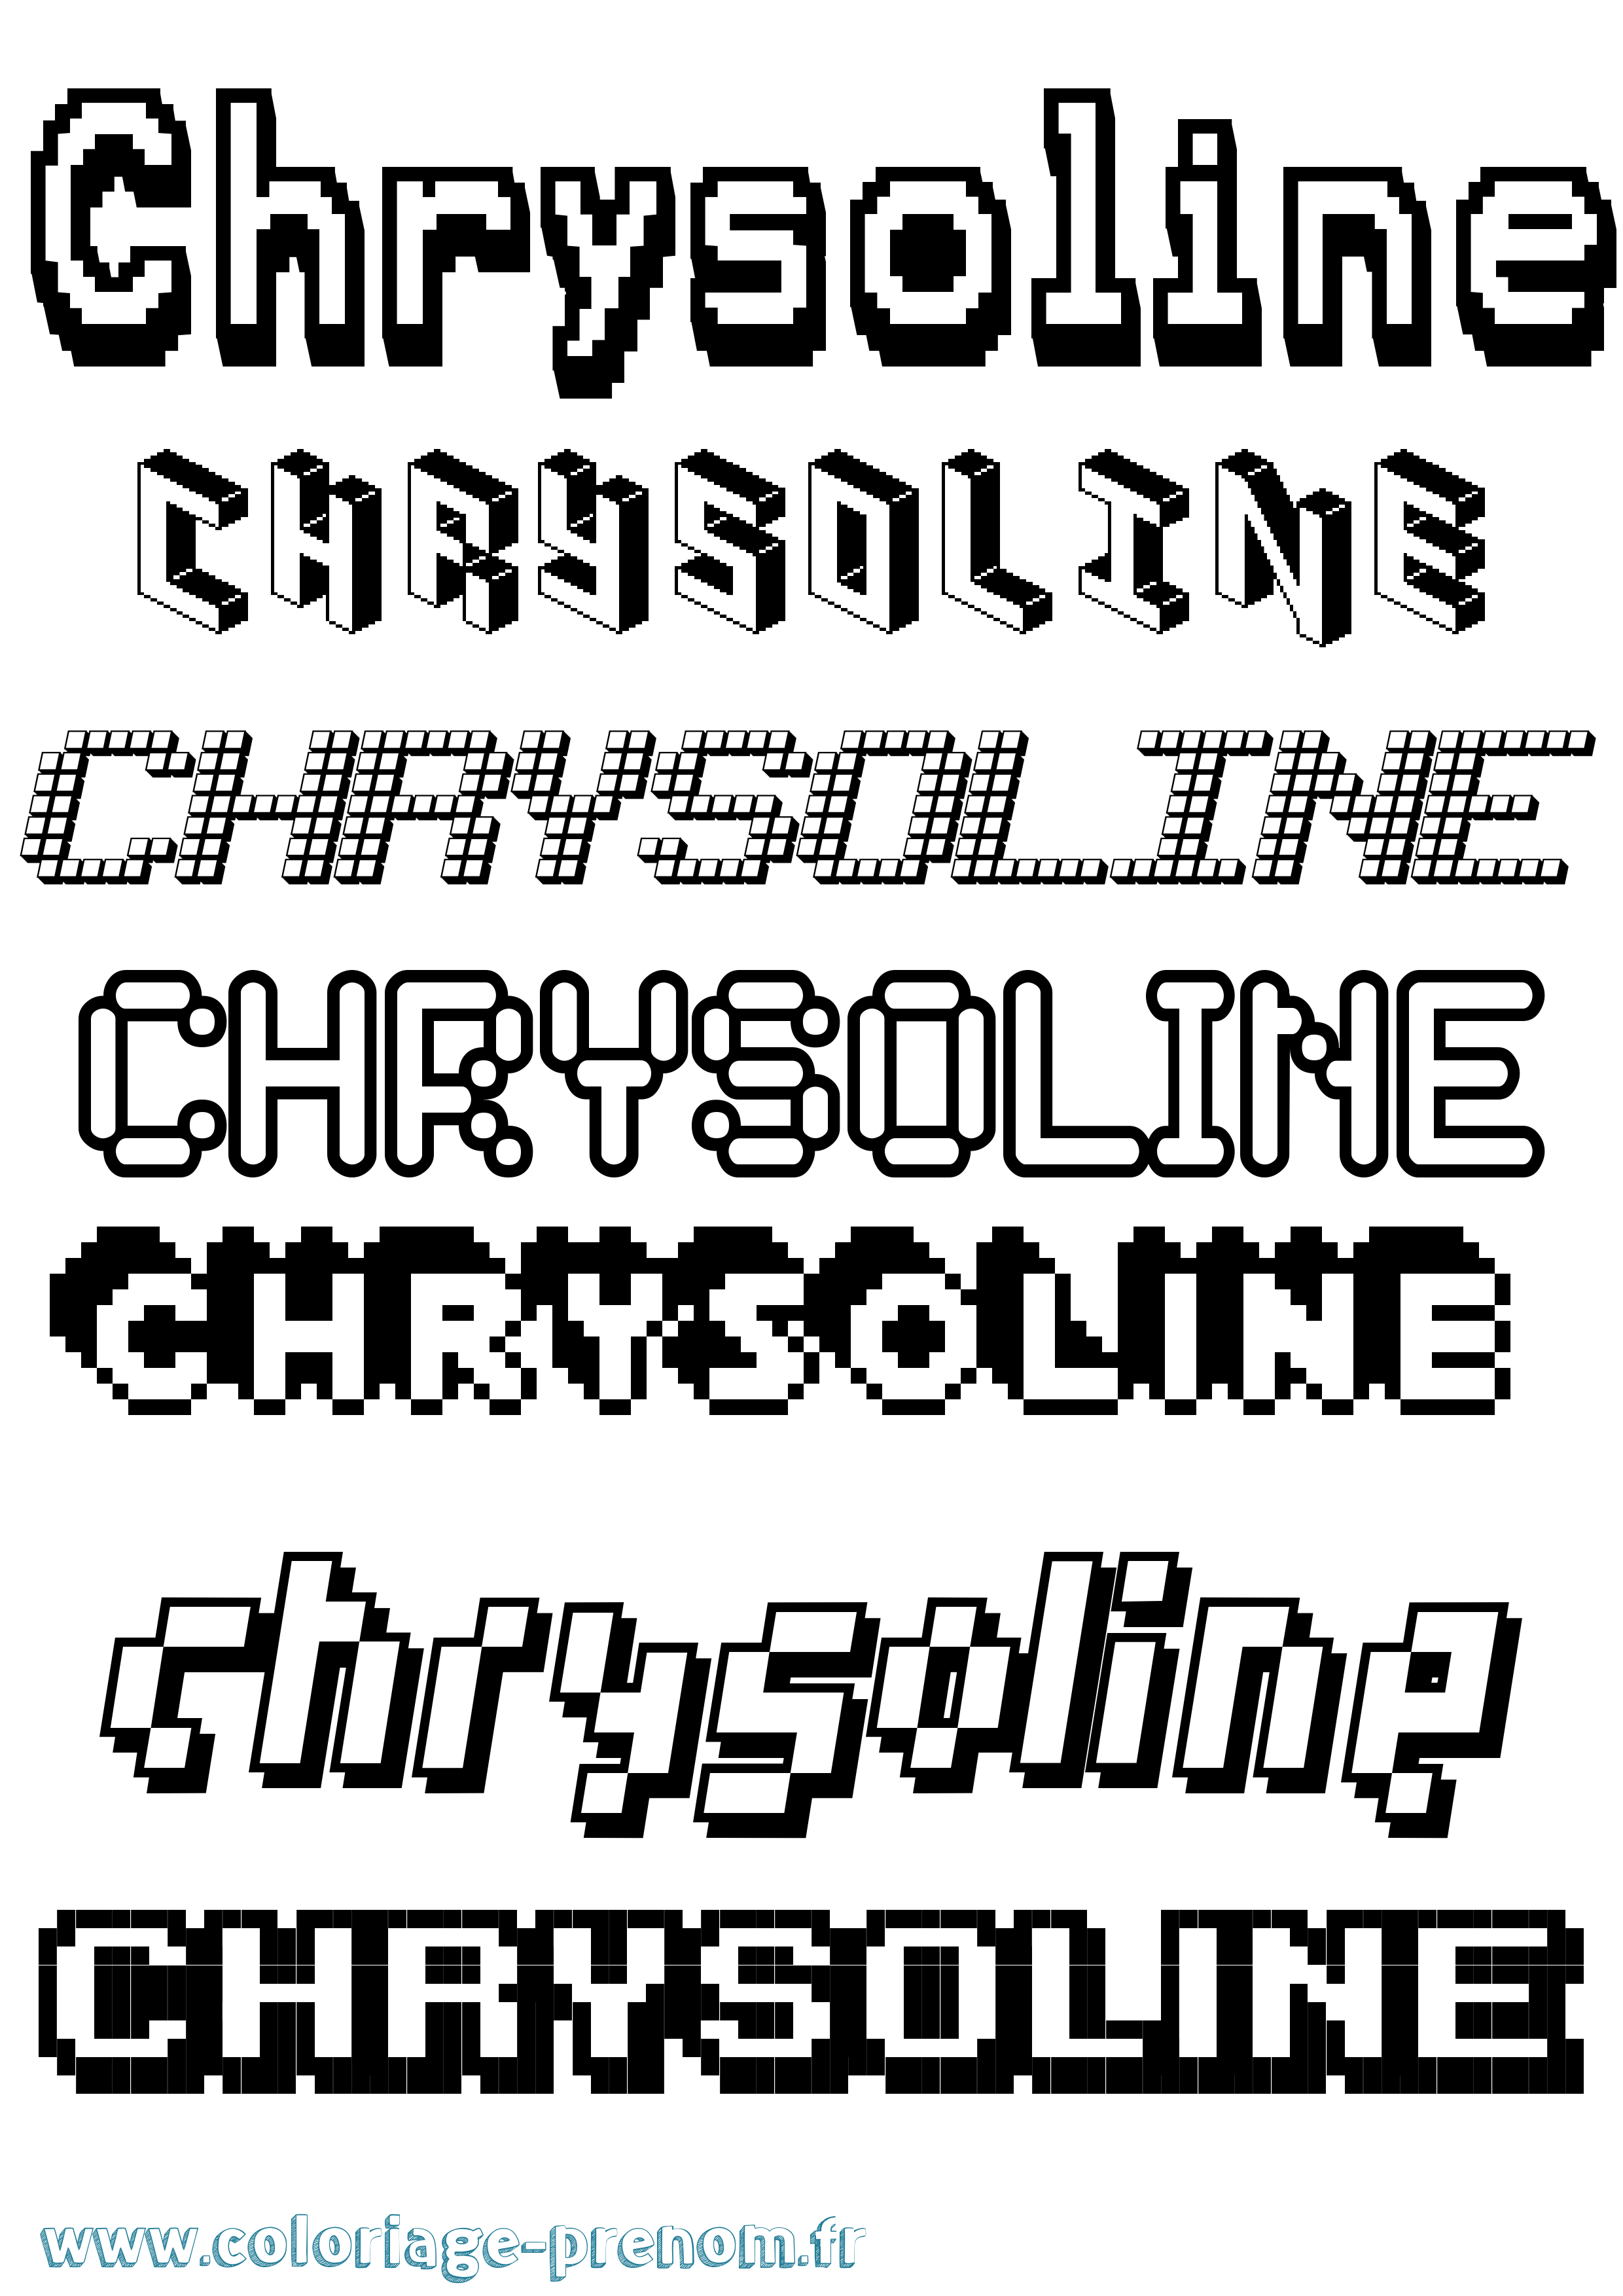 Coloriage prénom Chrysoline Pixel